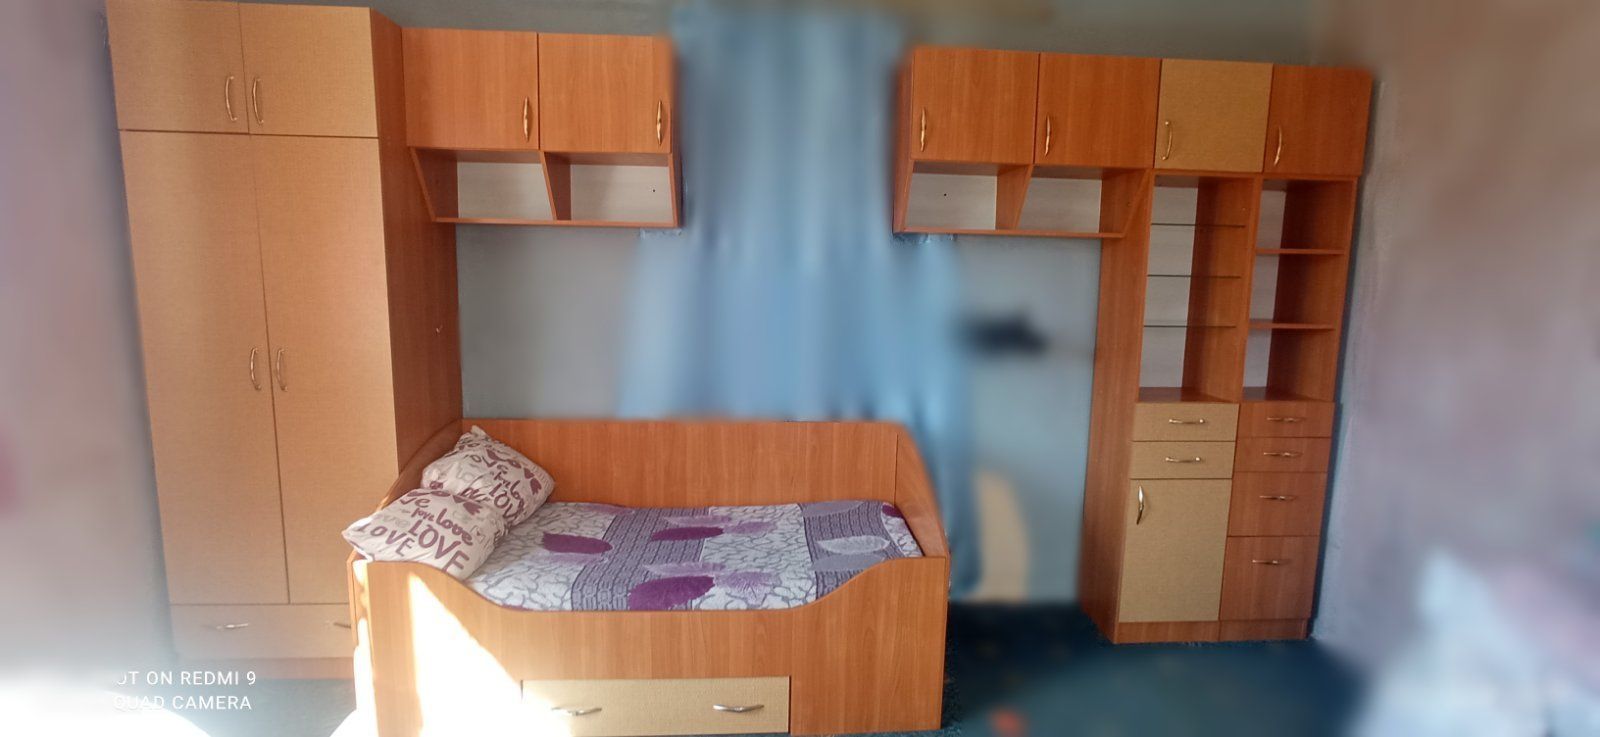 Меблі в дитячу стінка ліжко шафа тумби пенали